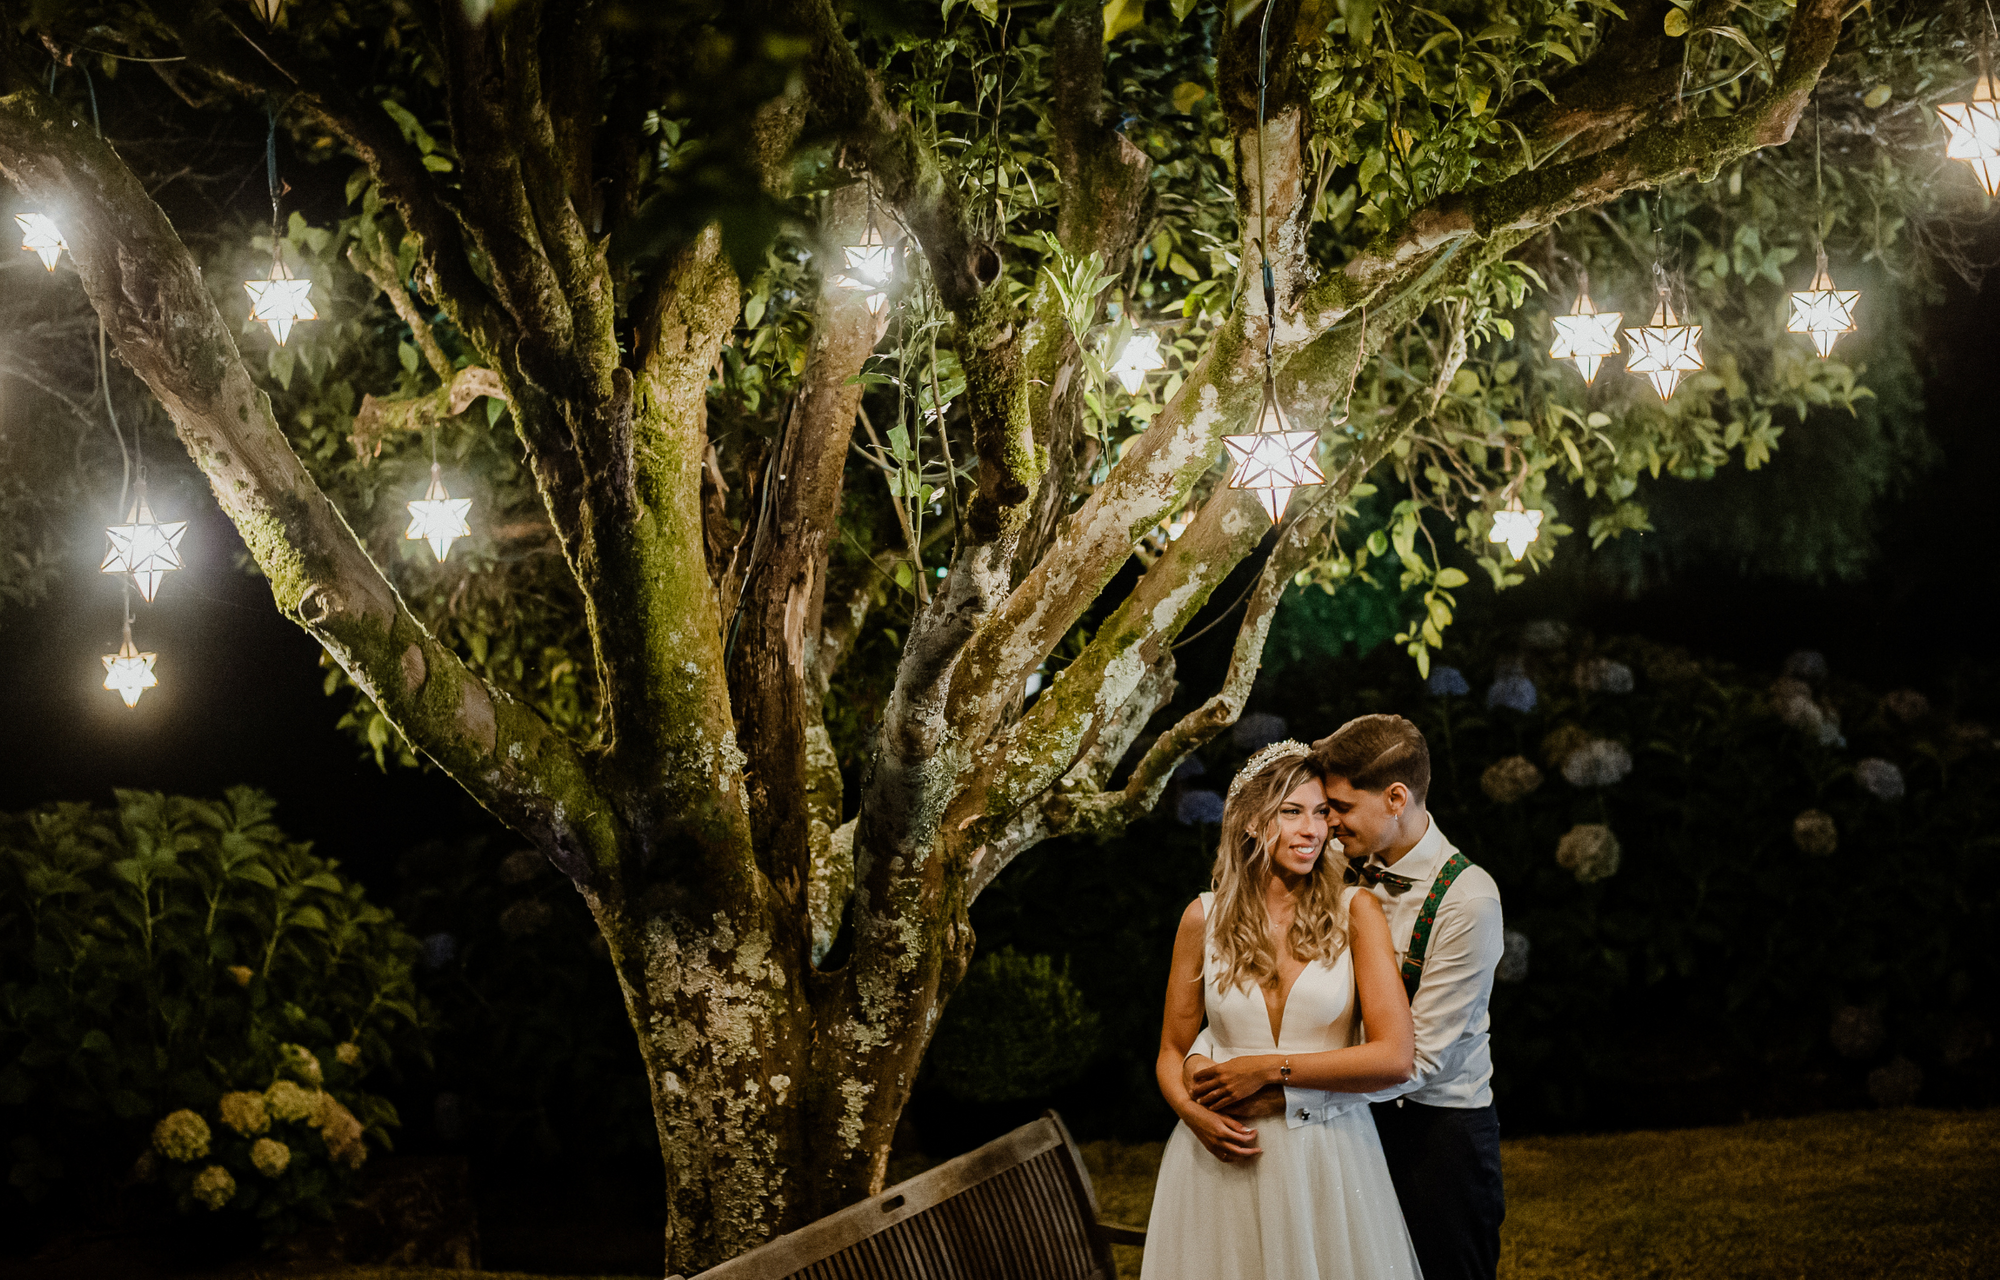 Das Hochzeitspaar steht unter einem Baum, der geschmückt ist mit leuchtenden Sternen.